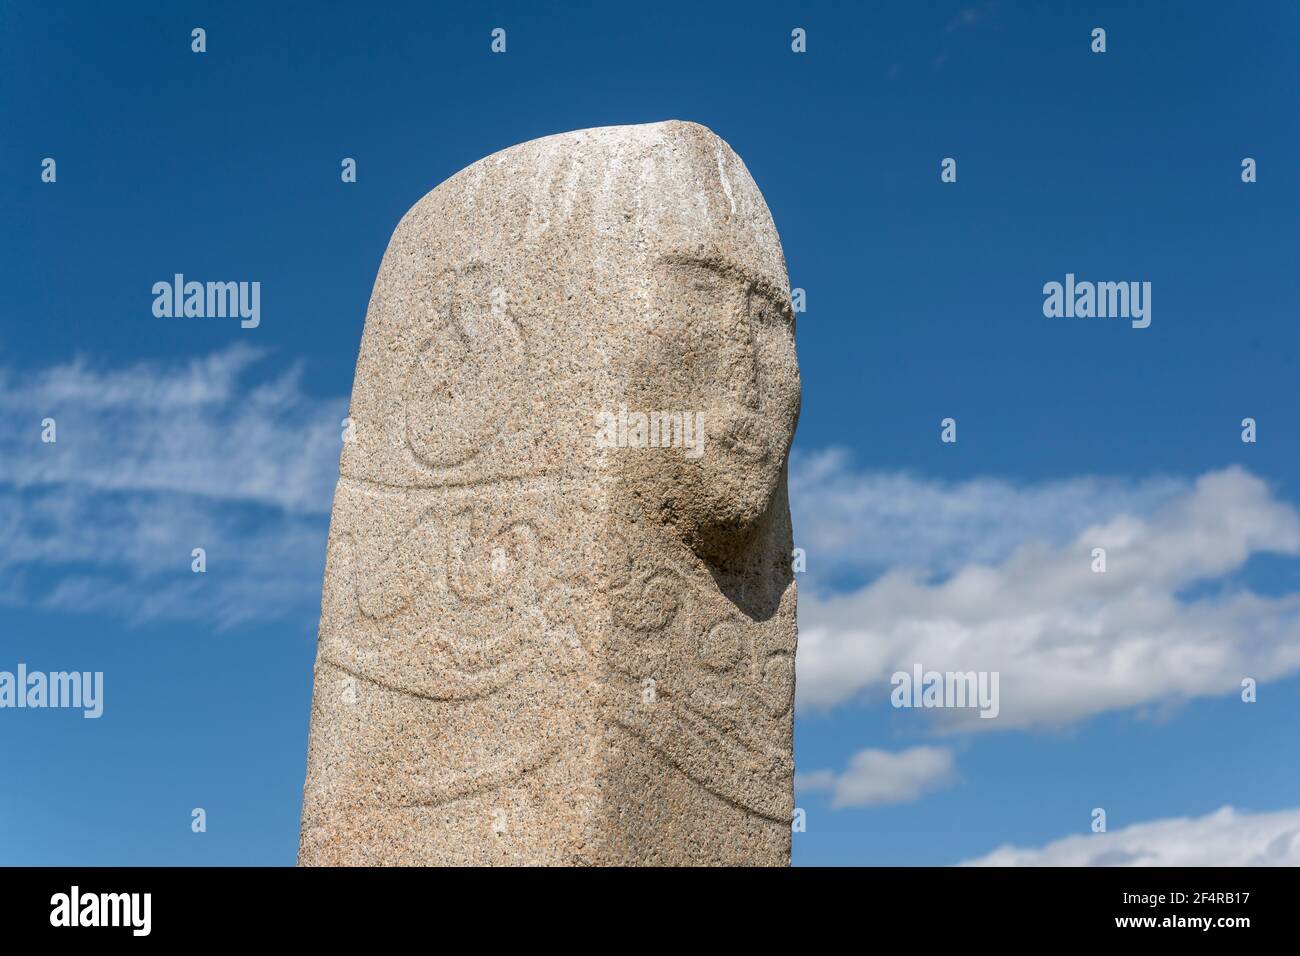 Moron, Mongolei - 13. August 2019: Großer Deerstein, stehender Stein, mit Gesicht einer Frau in der Steppe der Mongolei bei Mörön, Khereksur, Mongolei. Stockfoto